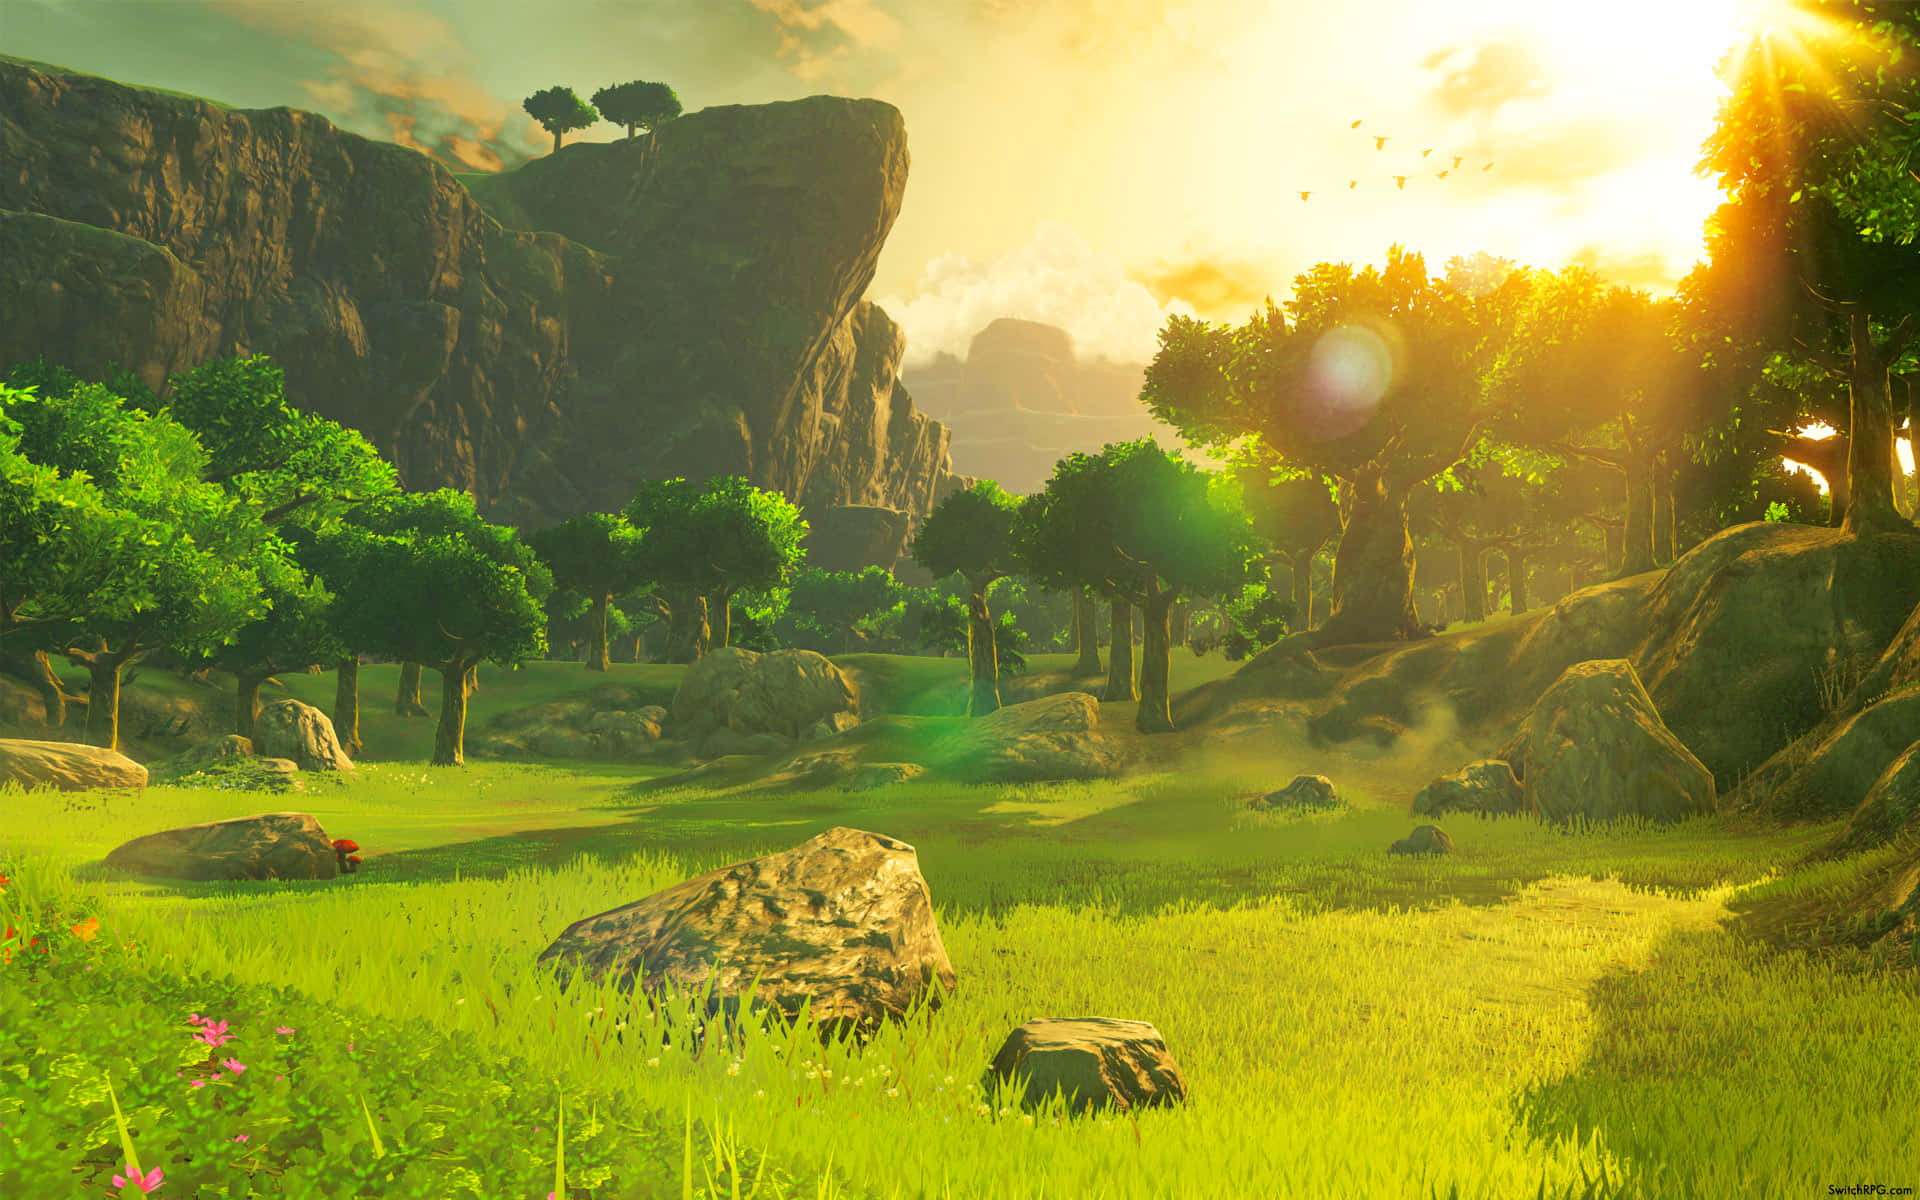 Vistapanoramica Del Paesaggio Di Hyrule Sullo Sfondo Da The Legend Of Zelda: Breath Of The Wild